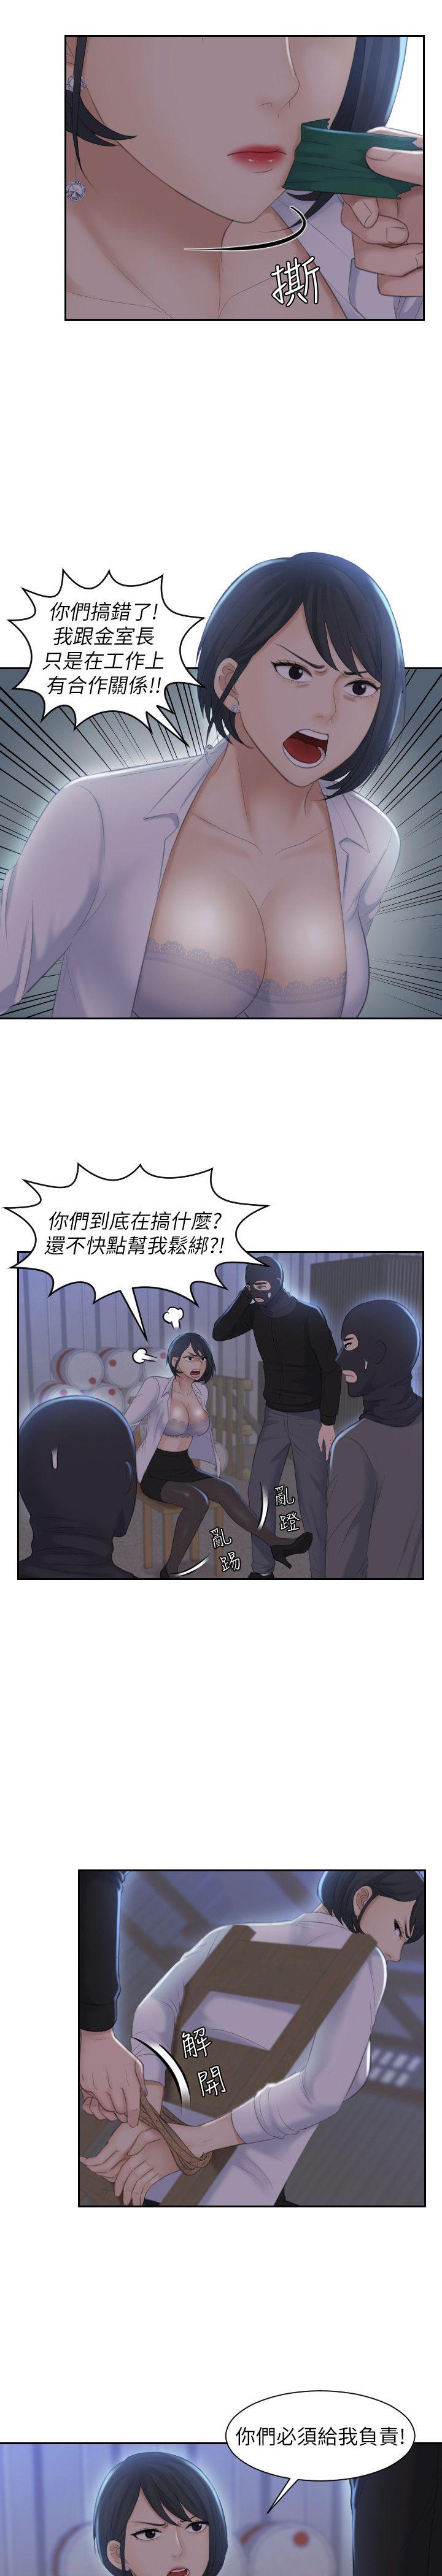 《熟女的滋味》漫画 第19话 - 被上的绑架犯